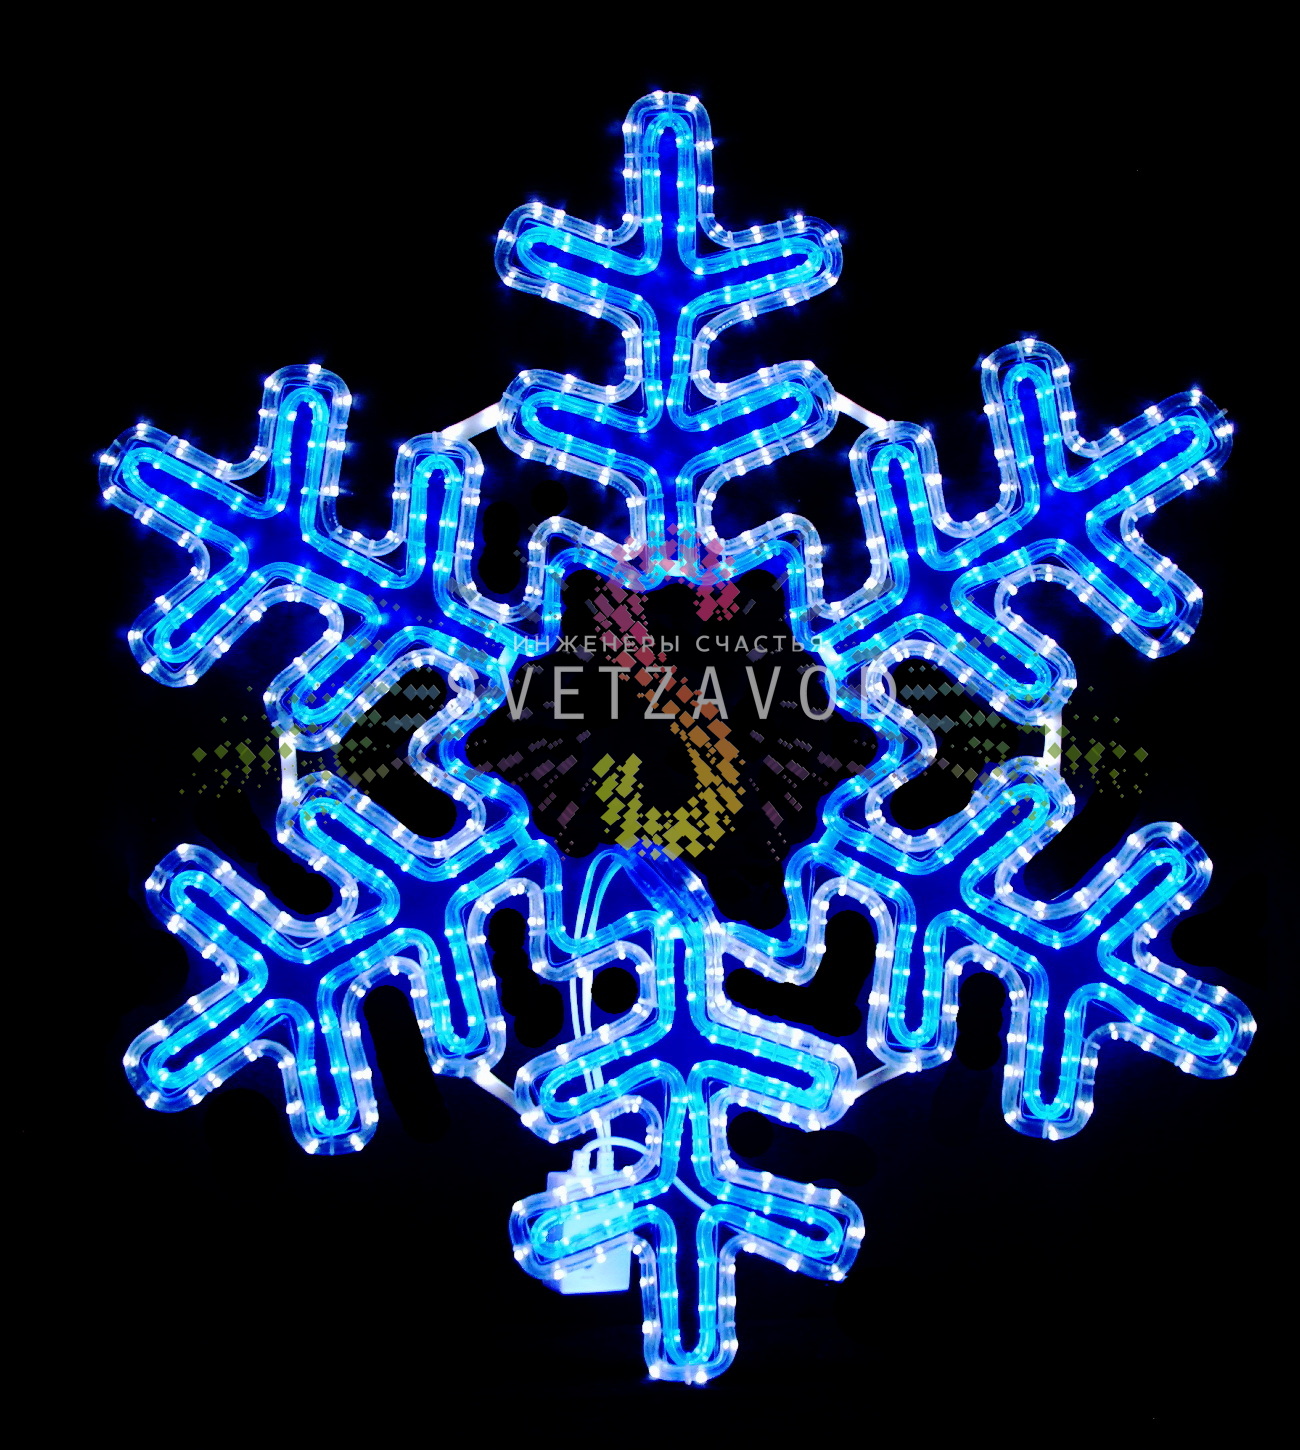 Светодиодная Снежинка, 79х69см, синяя+белая, с контроллером, 220В, IP65